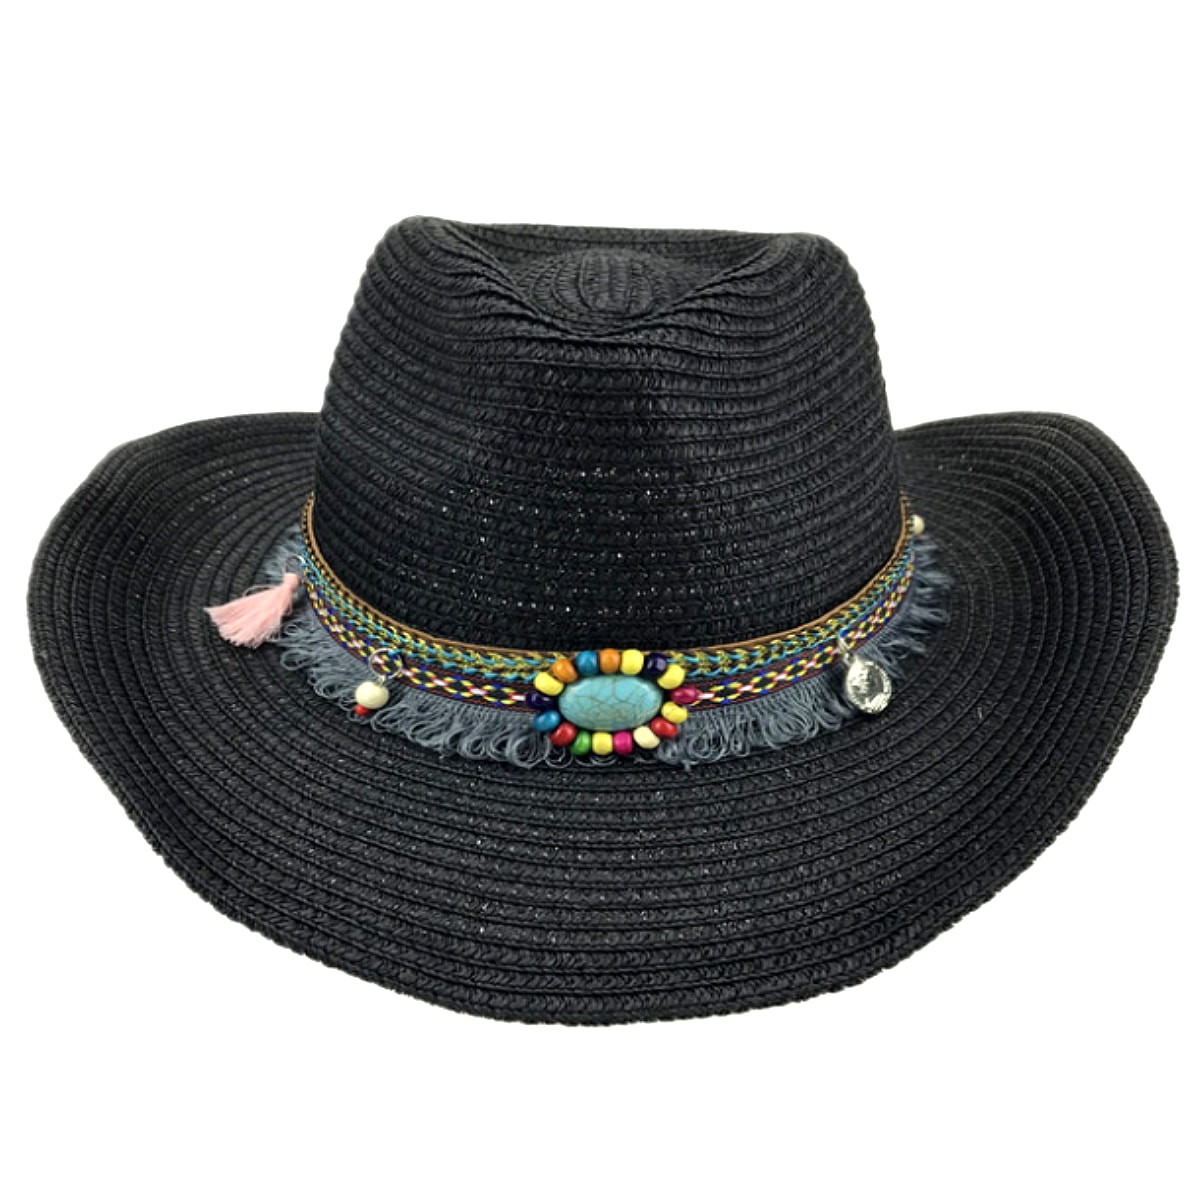 全4色! [Bohemian Decorative Belt Western Cowboy Hat] ボヘミアン・デコラティブ・ベルト・ウェスタン・カウボーイハット! 帽子 テンガロンハット ストローハット 麦わら帽子 つば広 サンキャップ シンプル 日焼け防止 男女兼用 バイクに! バイカー